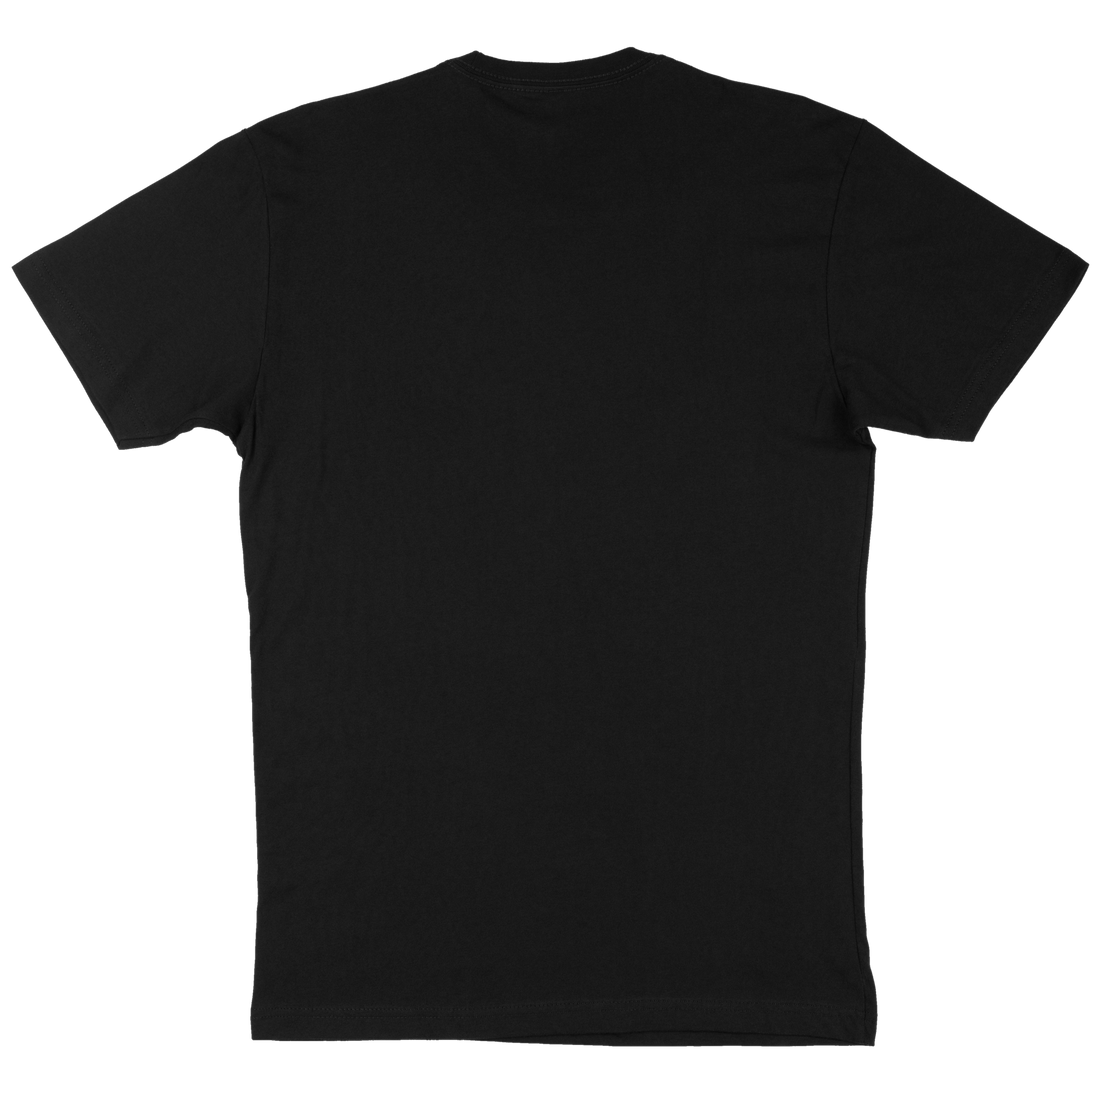 Aztecross x Content T-Shirt